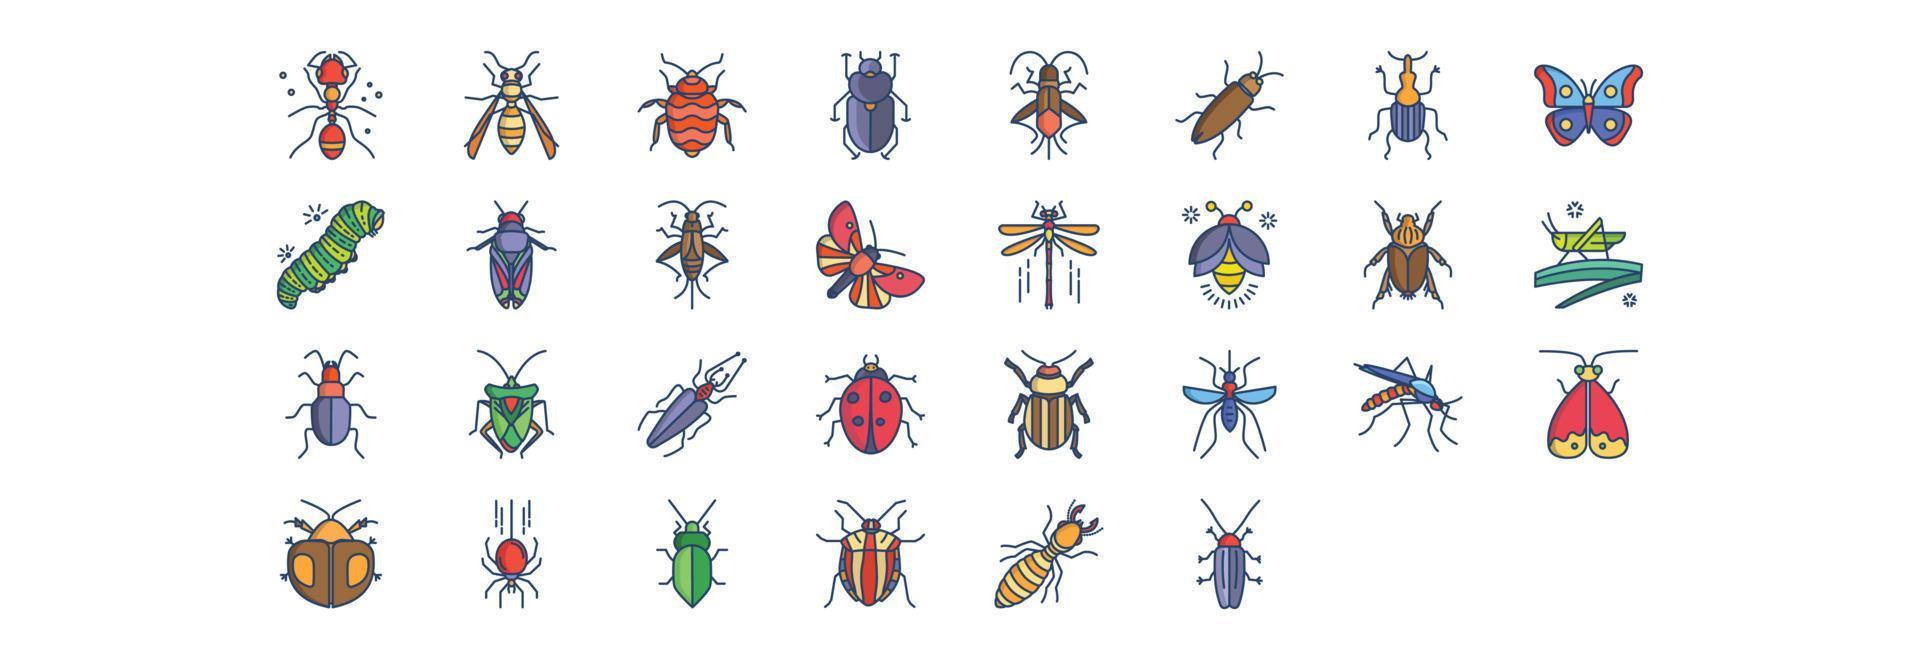 verzameling van pictogrammen verwant naar bugs en insecten, inclusief pictogrammen Leuk vinden mier, kever, boxelder en meer. vector illustraties, pixel perfect reeks